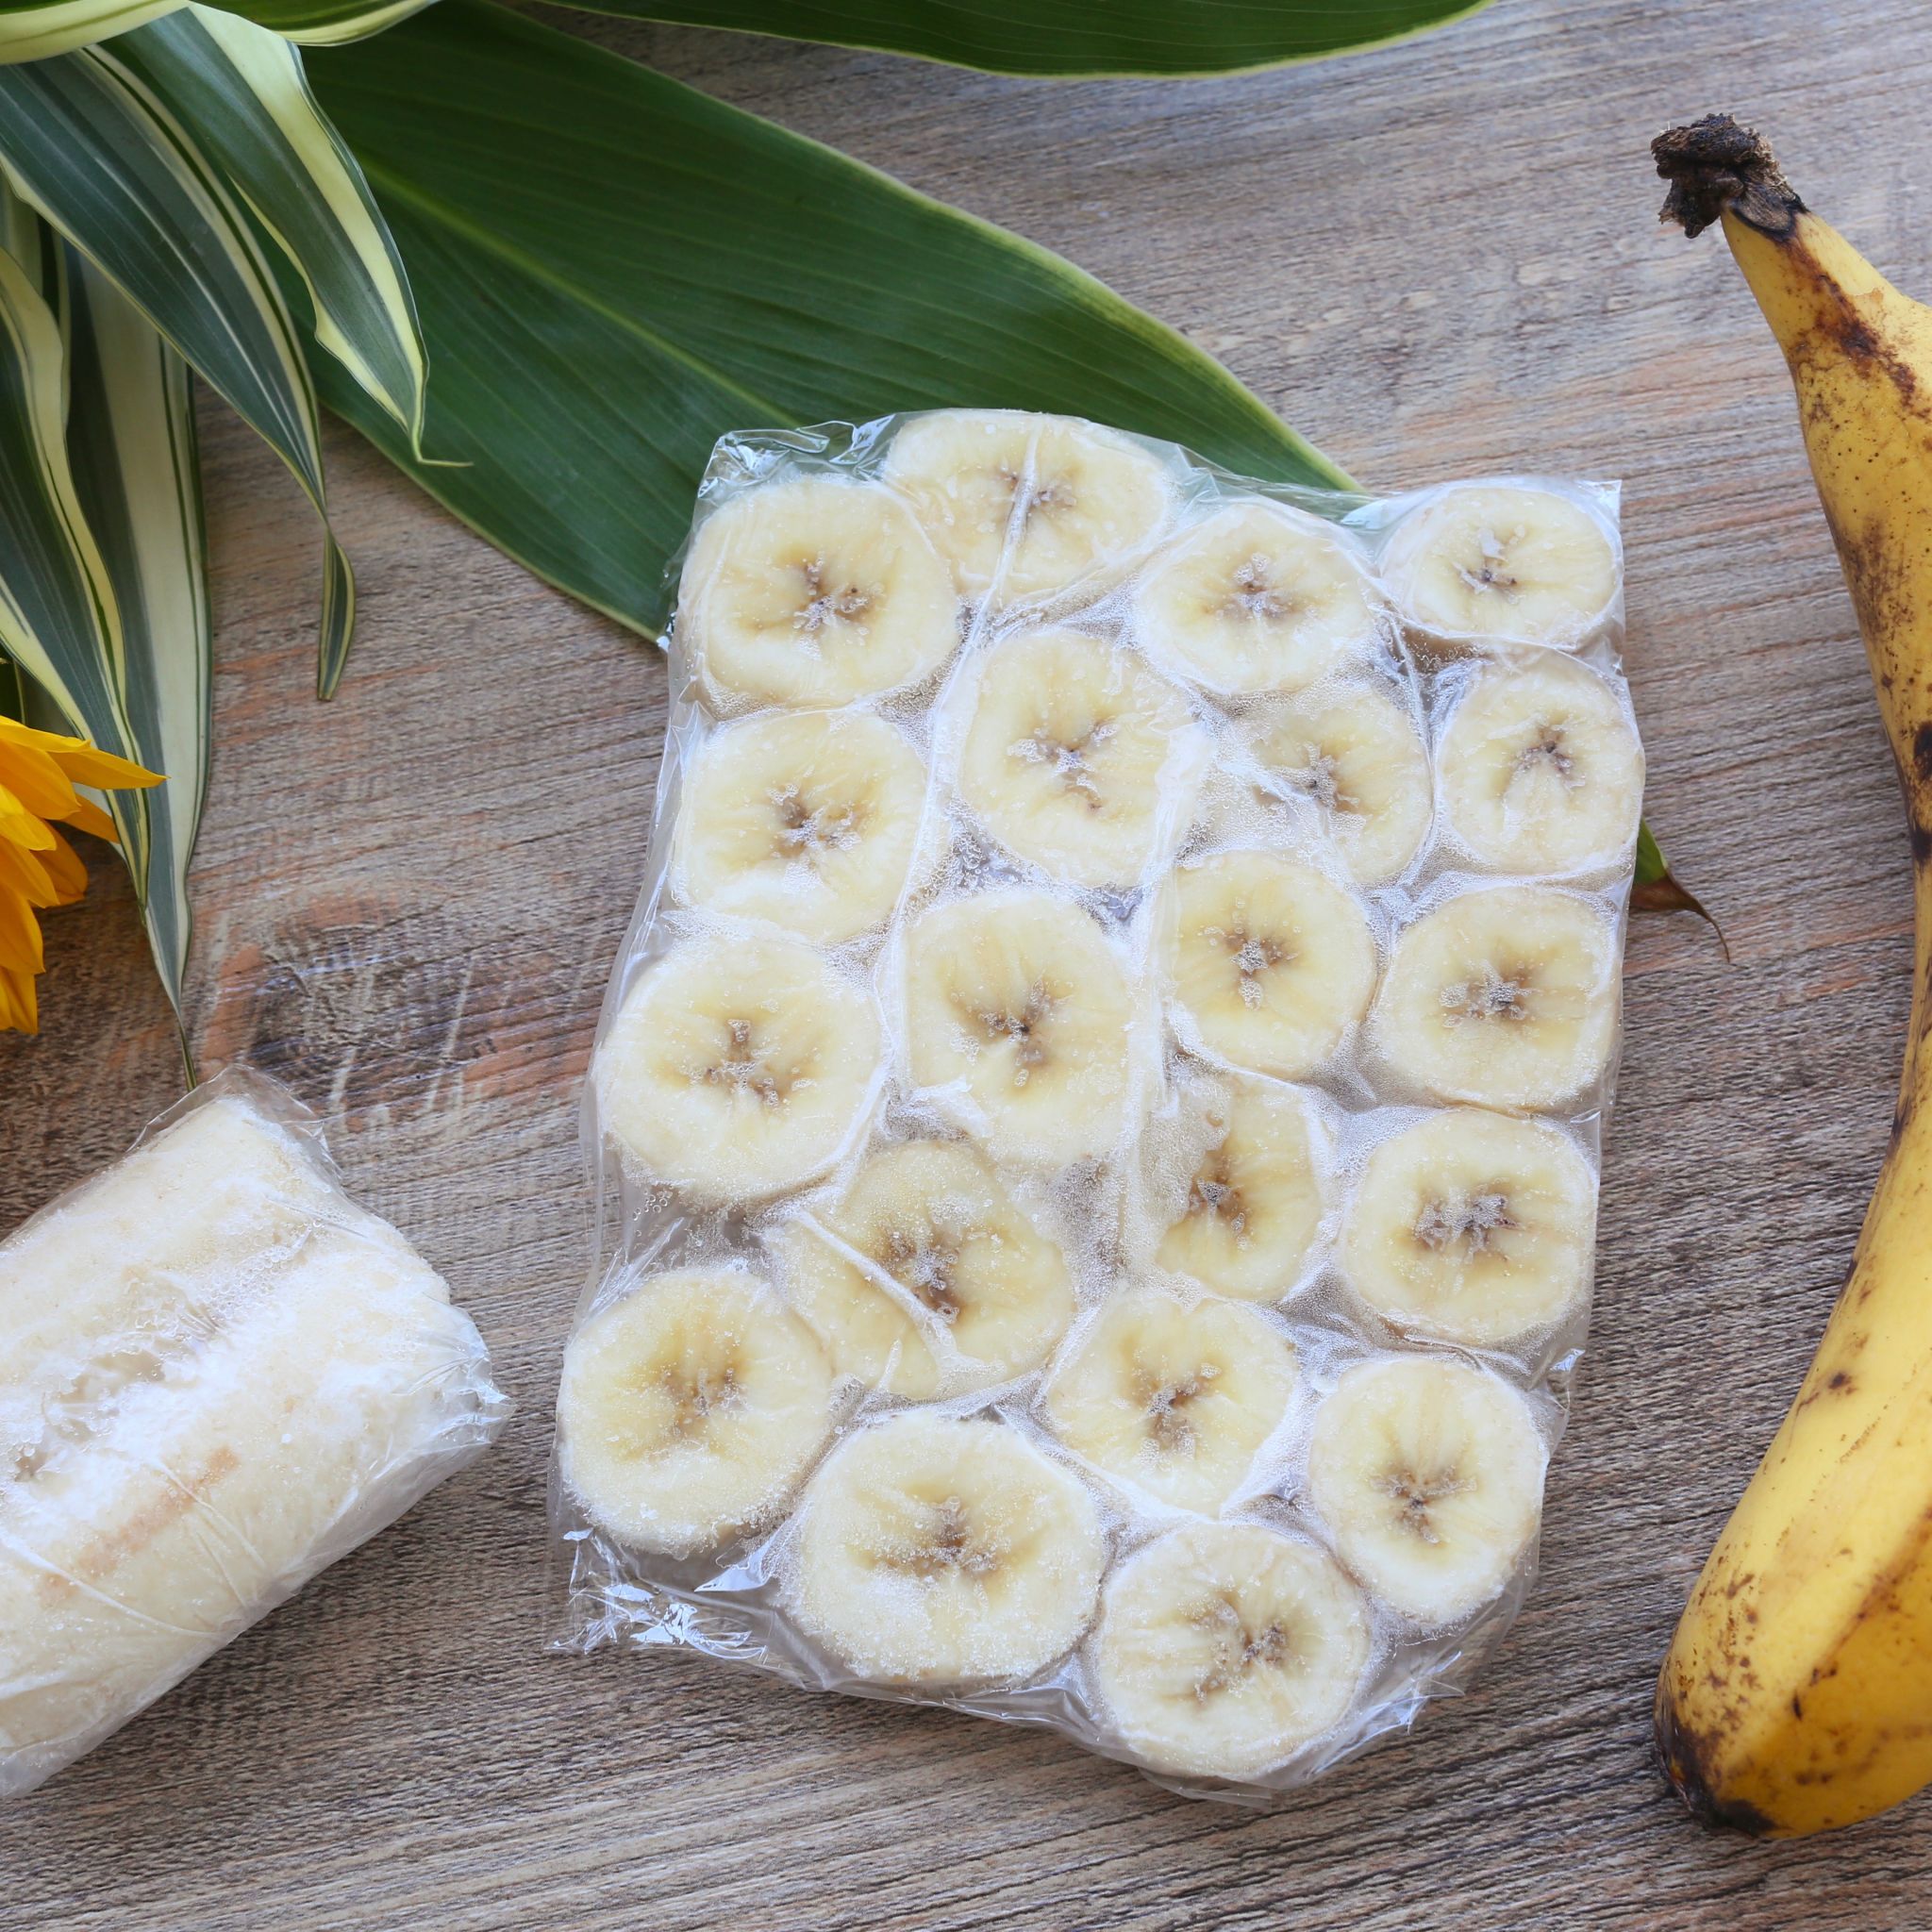 冷凍で長持ち 栄養アップ バナナの冷凍保存方法と食べ方を解説 やまでら くみこ のレシピ